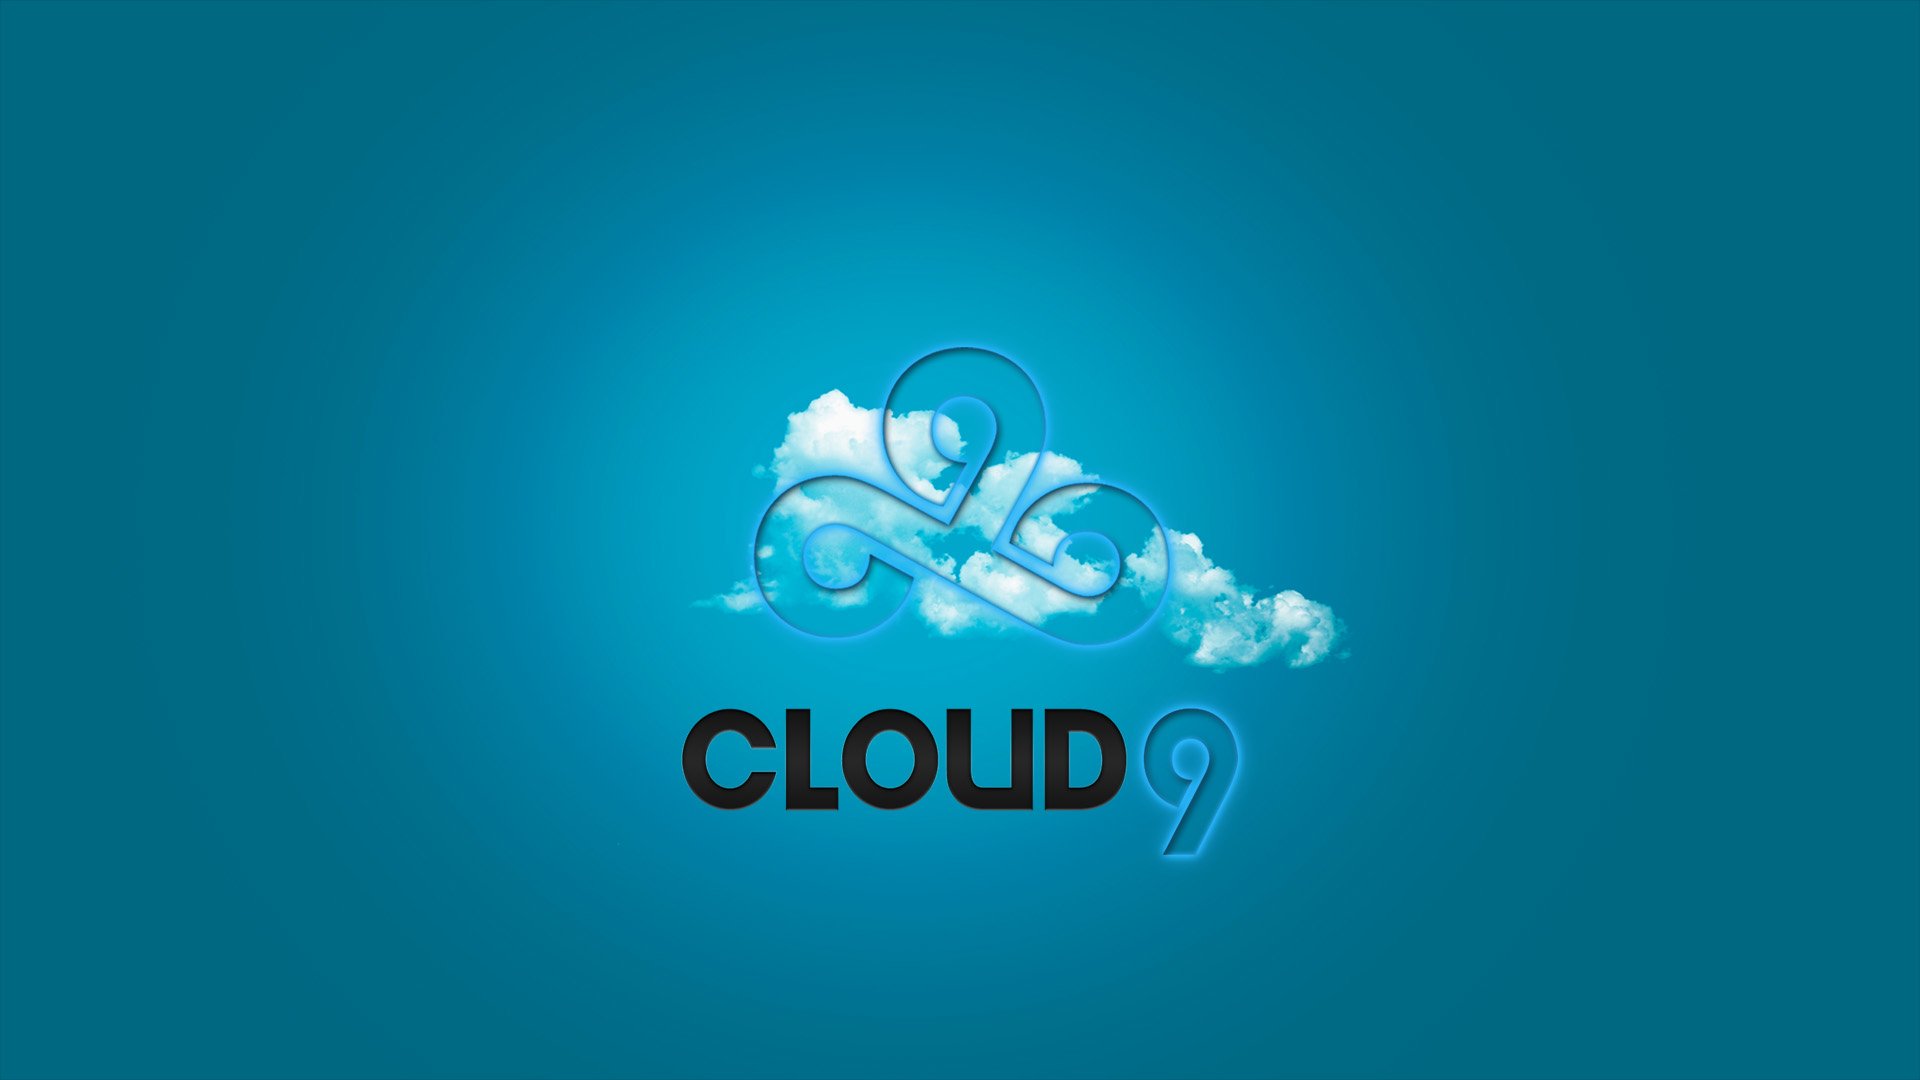 Cloud 9 Wallpapers